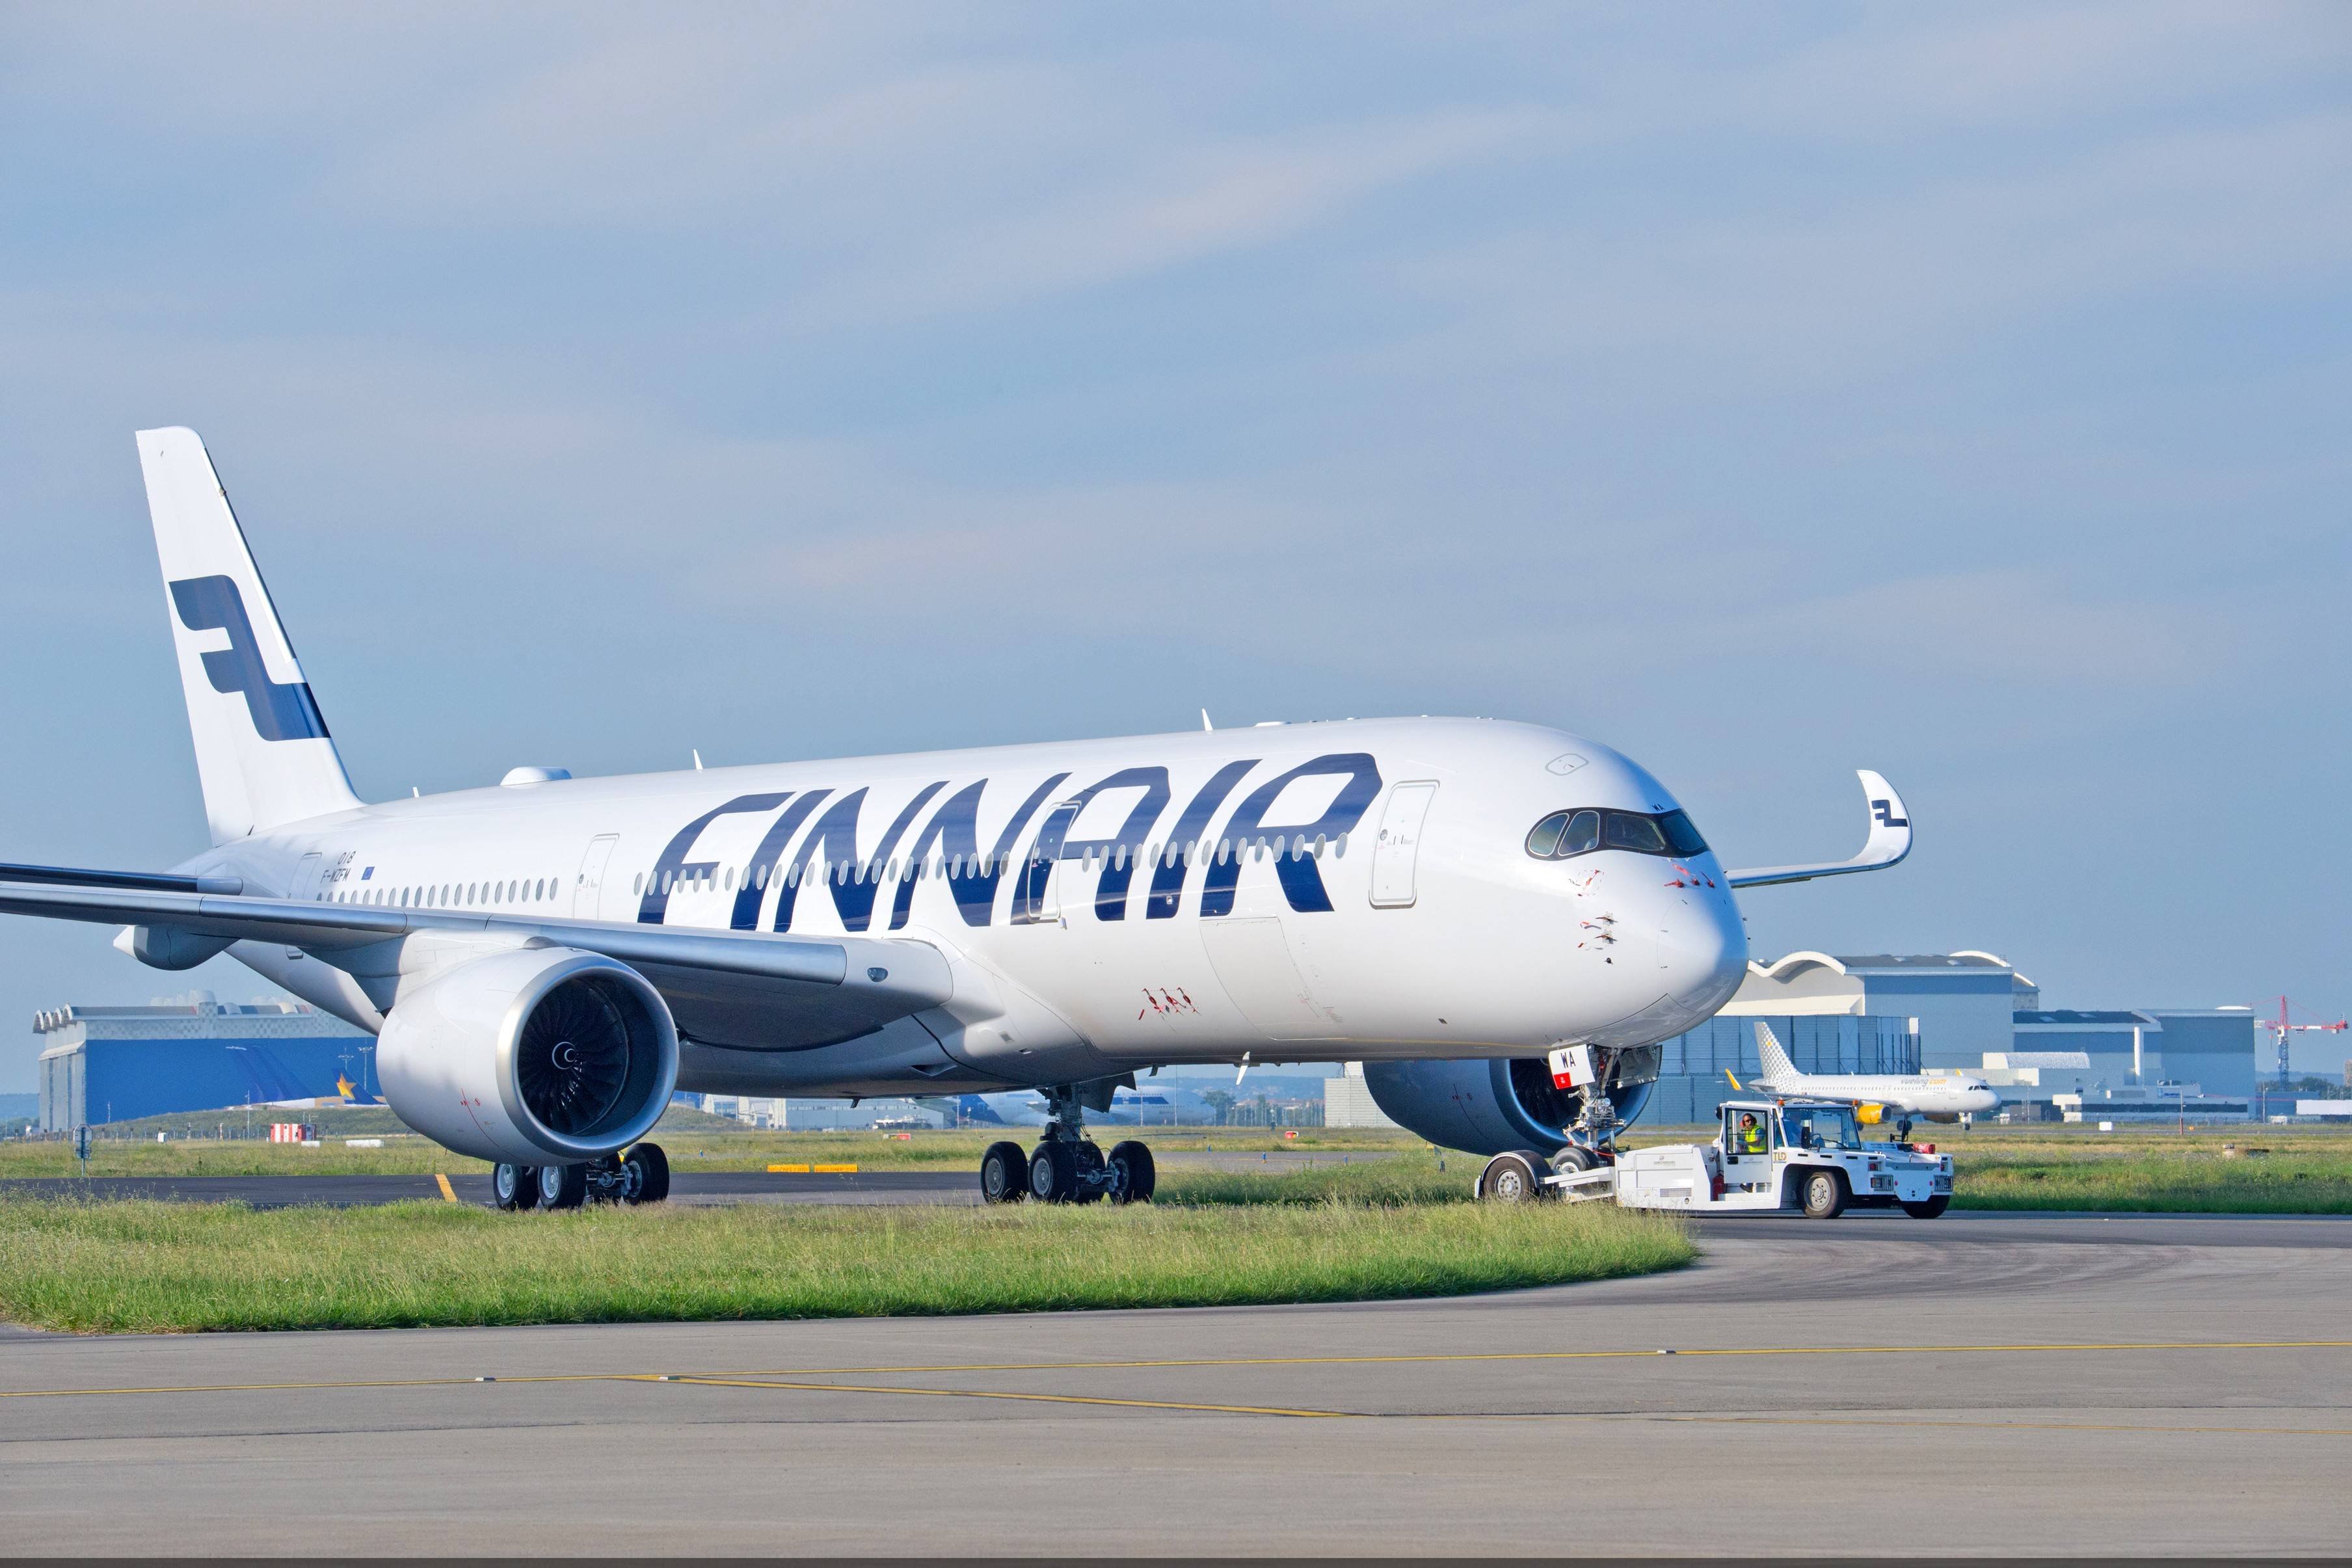 Авиакомпания finnair (финнэйр): официальный сайт, отзывы, регистрация на рейс | авиакомпании и авиалинии россии и мира